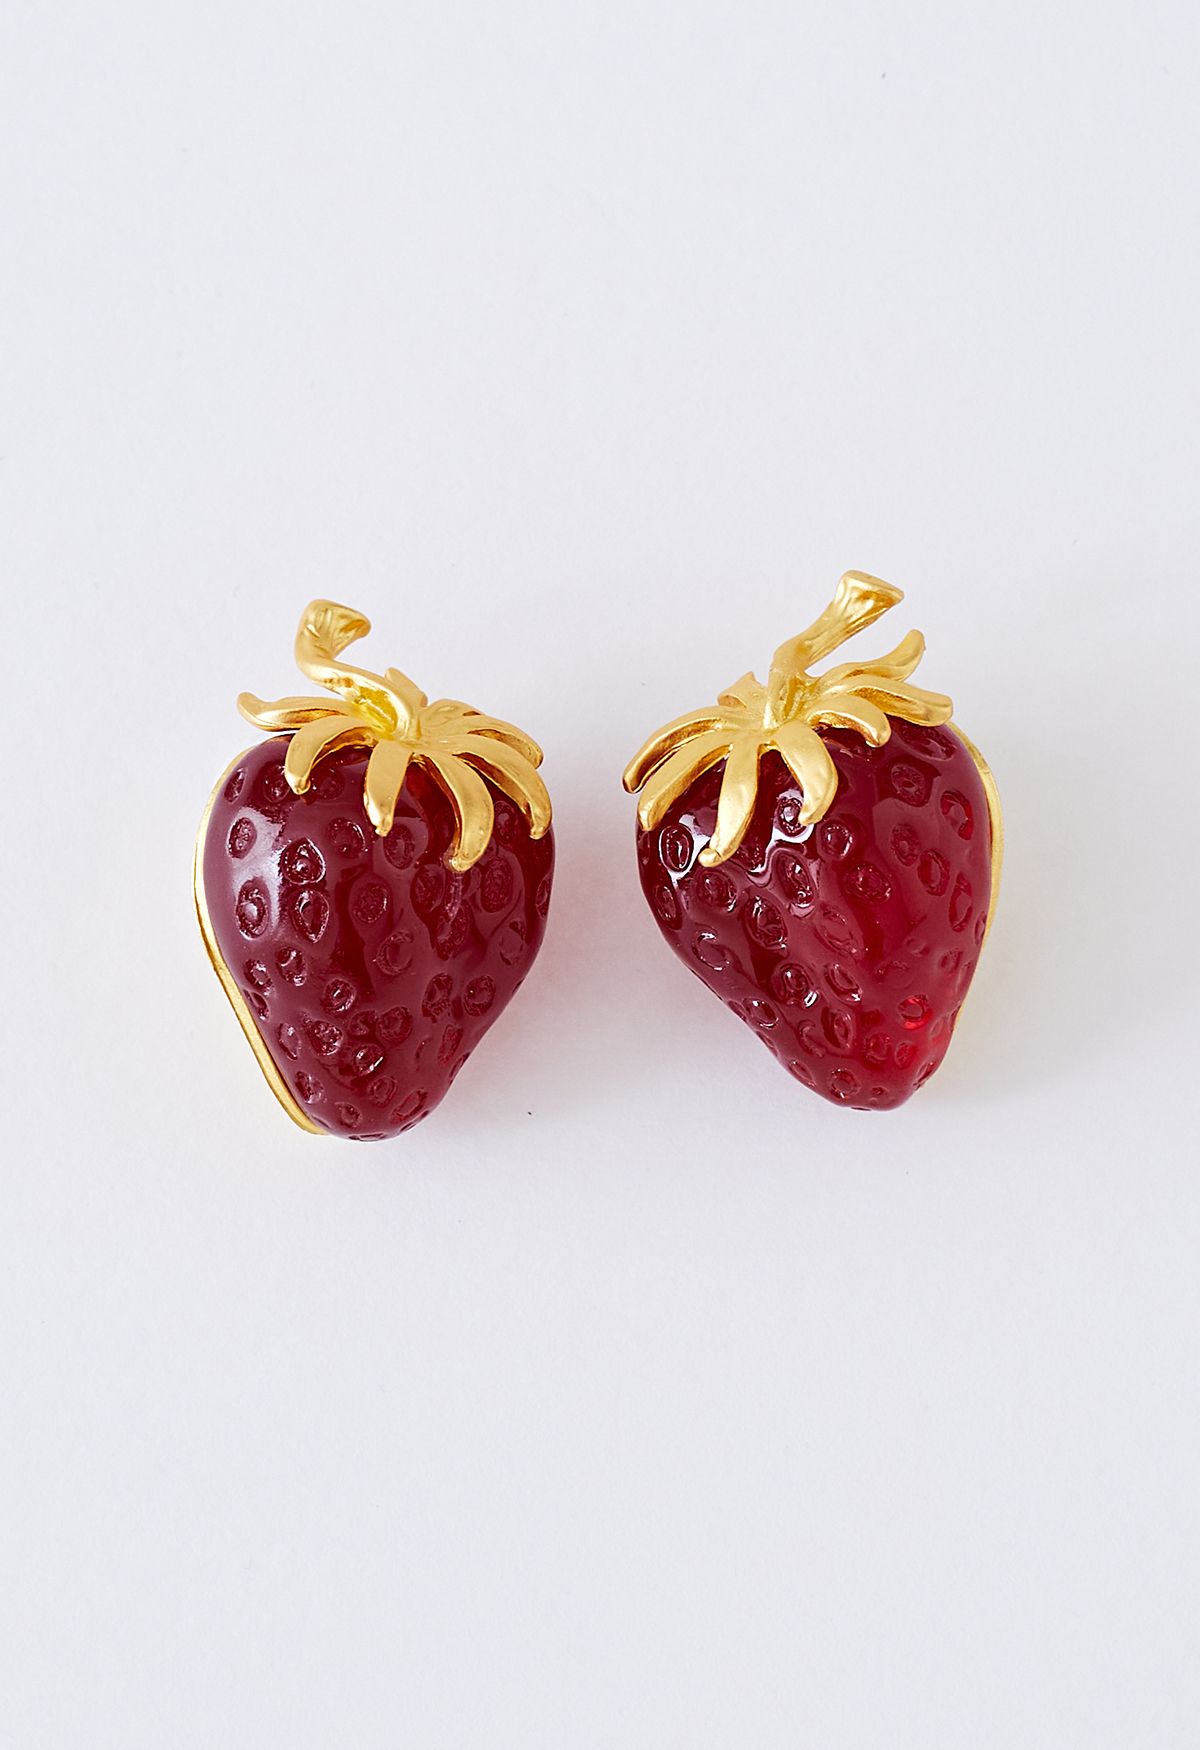 3D Red Strawberry Resin Earrings